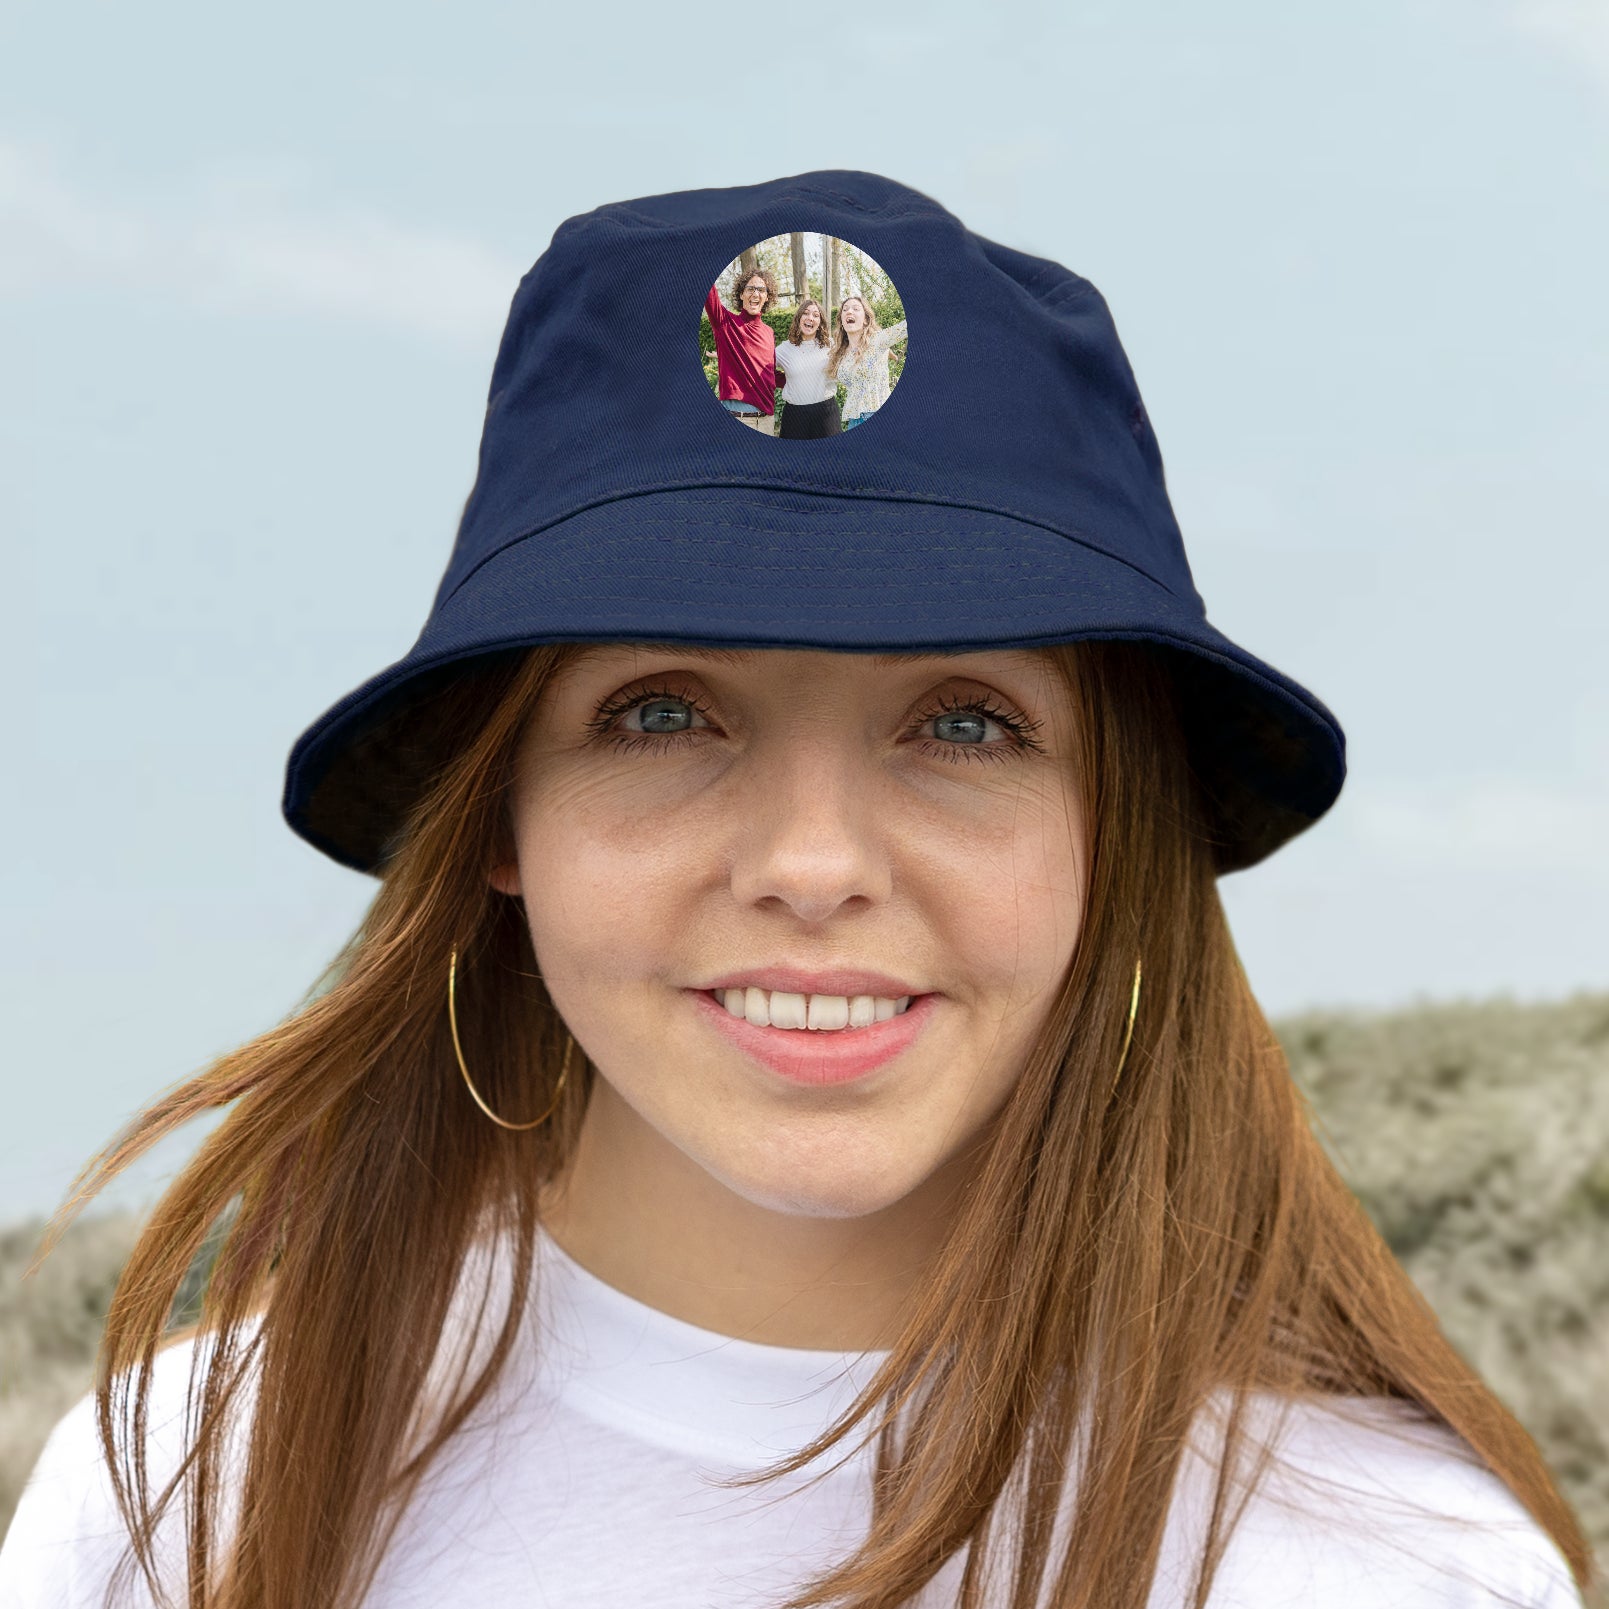 Personalised bucket hat - Blue